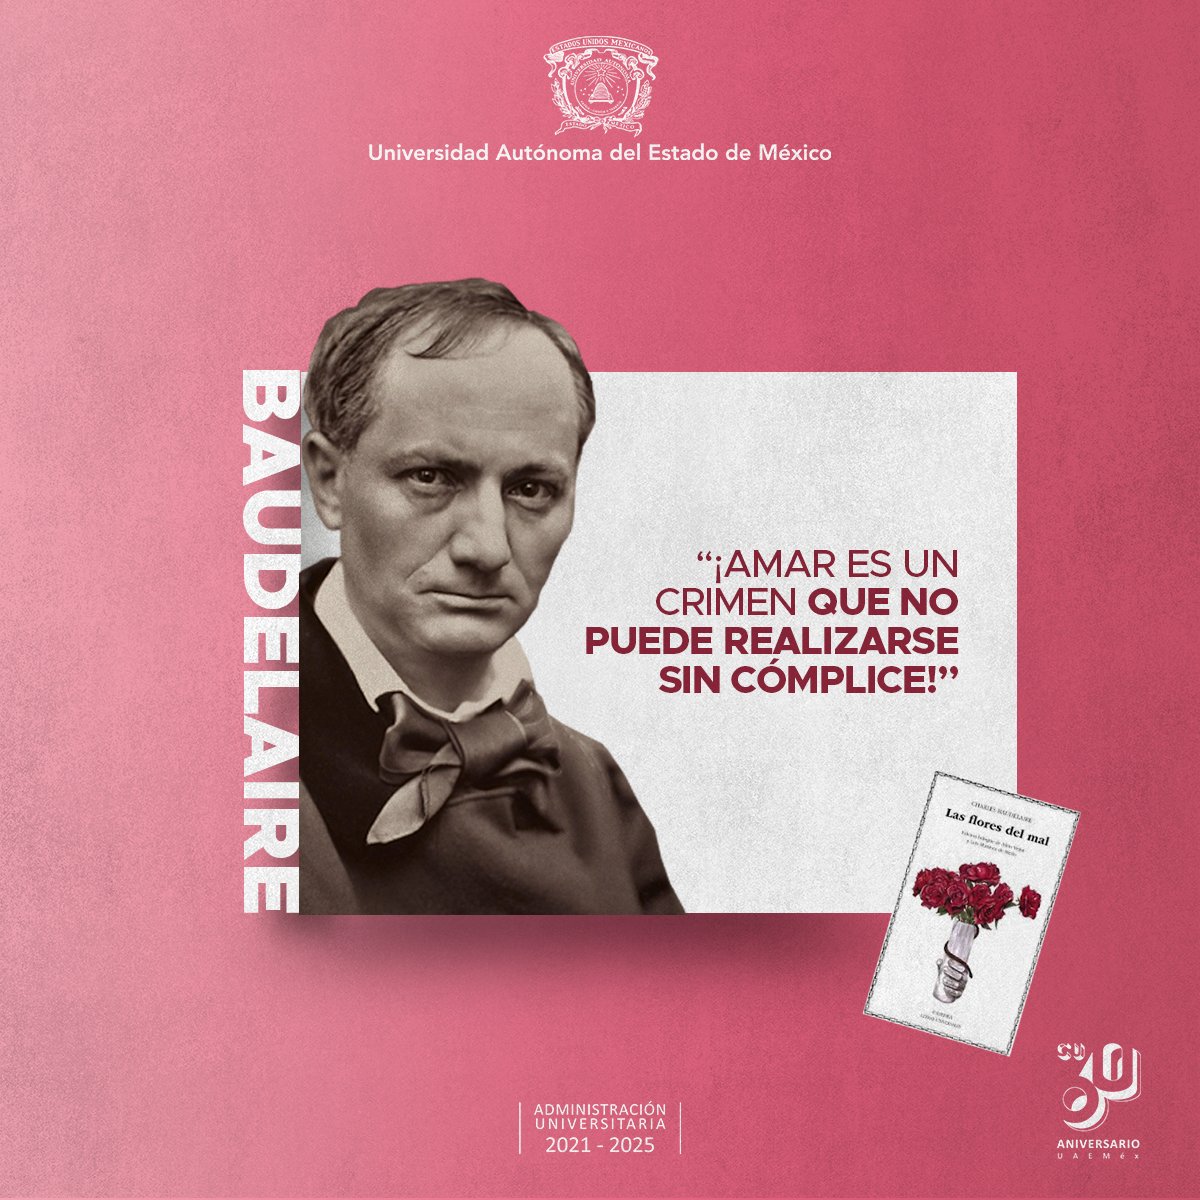 Un día como hoy nació el poeta francés Charles Baudelaire, uno de los máximos exponentes del simbolismo y el iniciador de la poesía moderna. Es recordado por sus obras 'Las flores del mal' y 'Los paraísos artificiales'. #SomosUAEMéx 💚💛